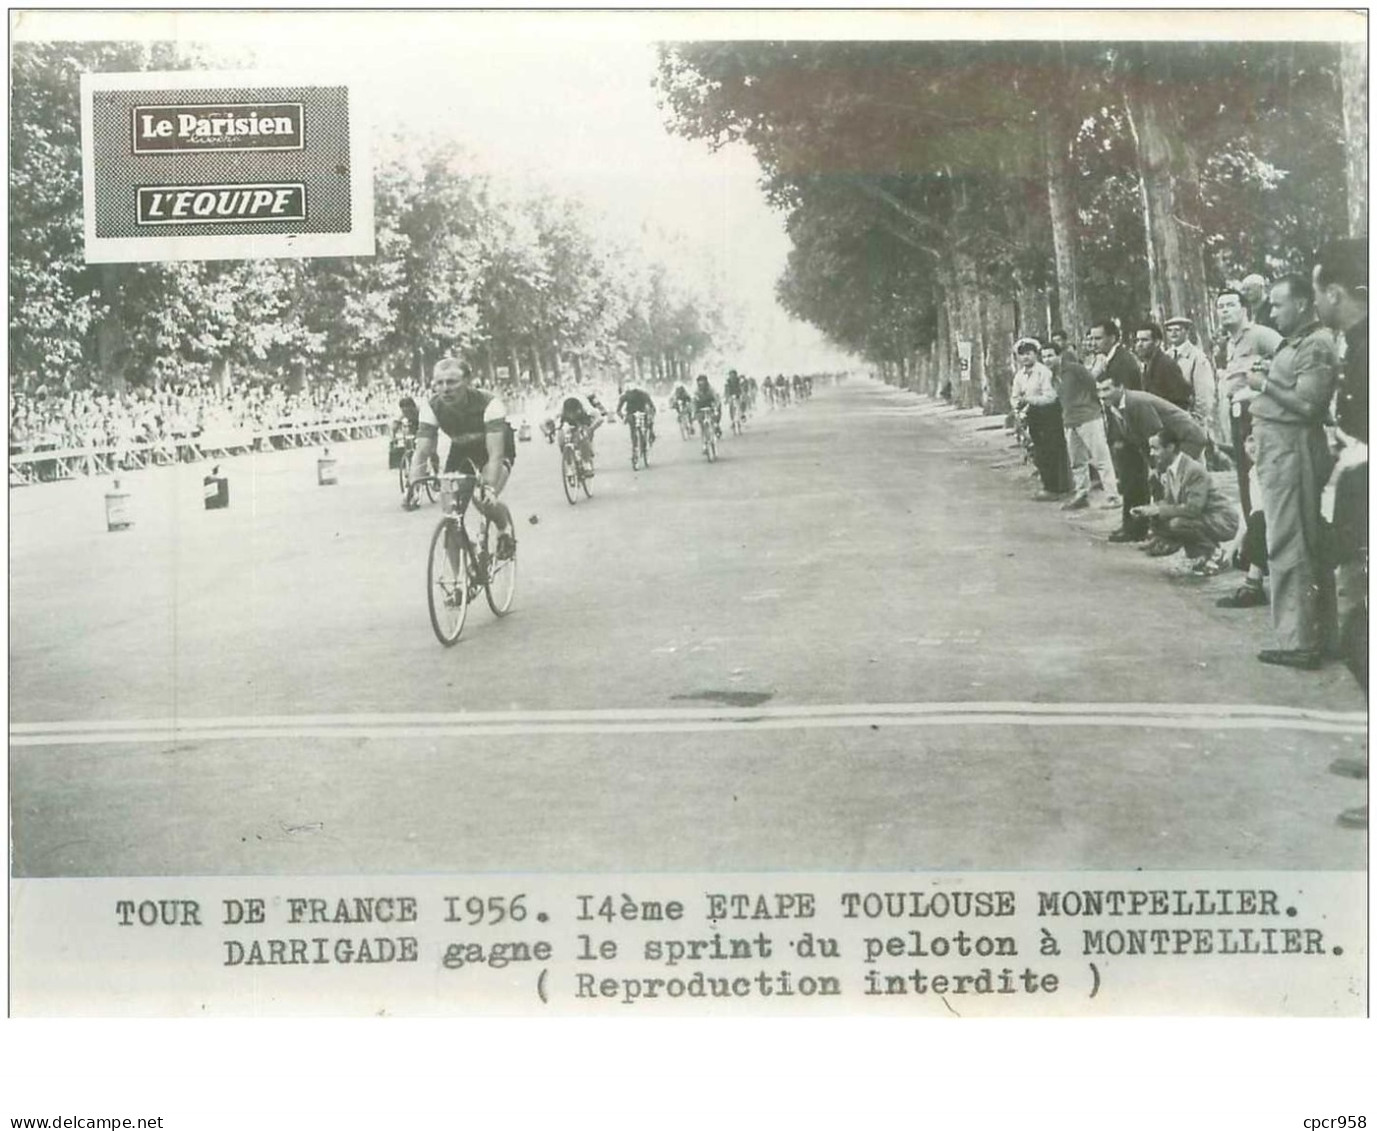 PHOTO DE PRESSE ORIGINALE TOUR DE FRANCE 1956.20X15.14eme ETAPE TOULOUSE MONTPELLIER.DARRIGADE GAGNE LE SPRINT.n°18679 - Cyclisme